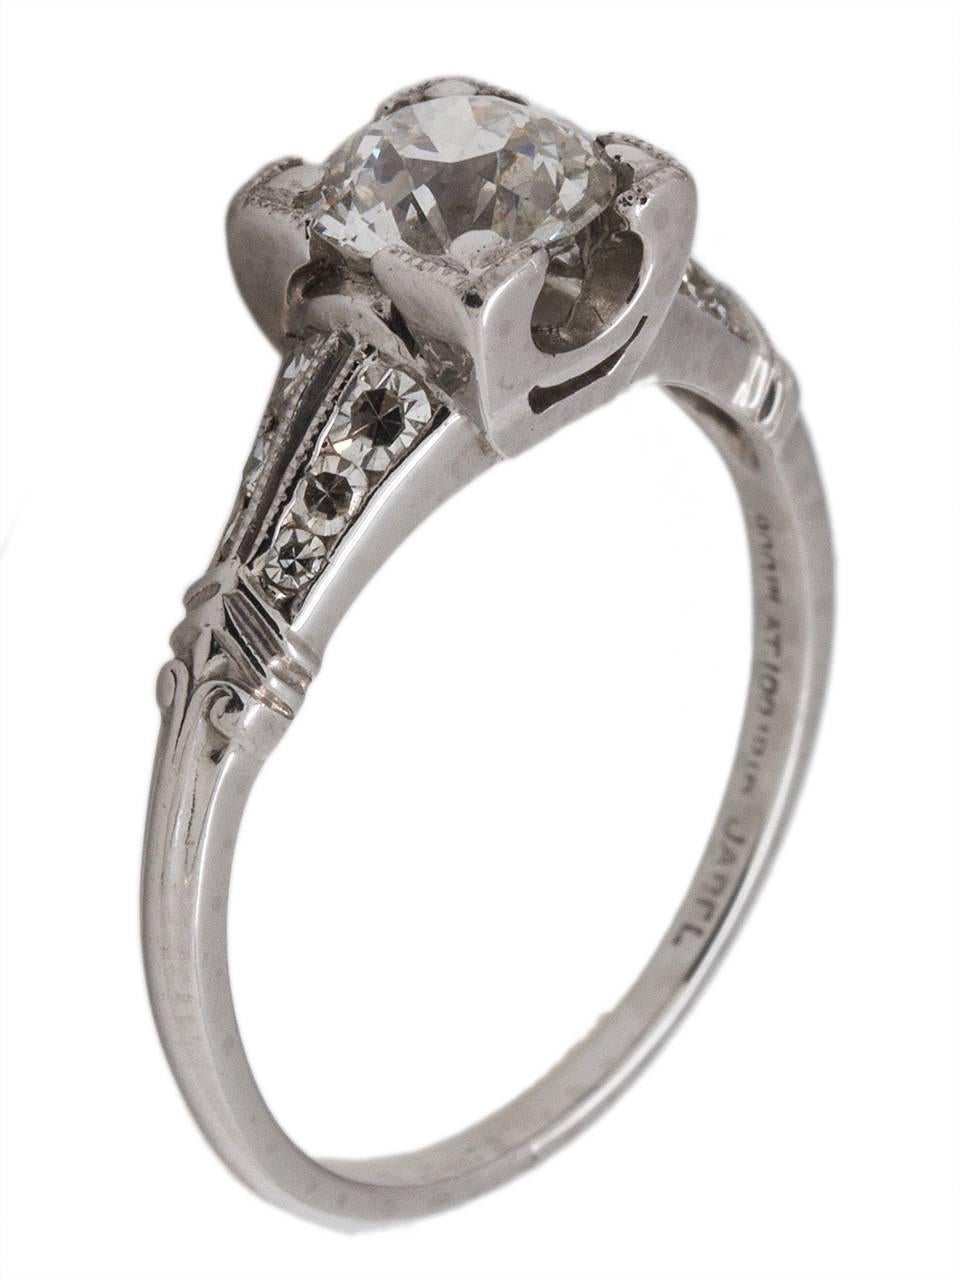 Art Deco Antique Engagement Ring Platinum 0.90 Carat Old European Cut Diamond circa 1930s